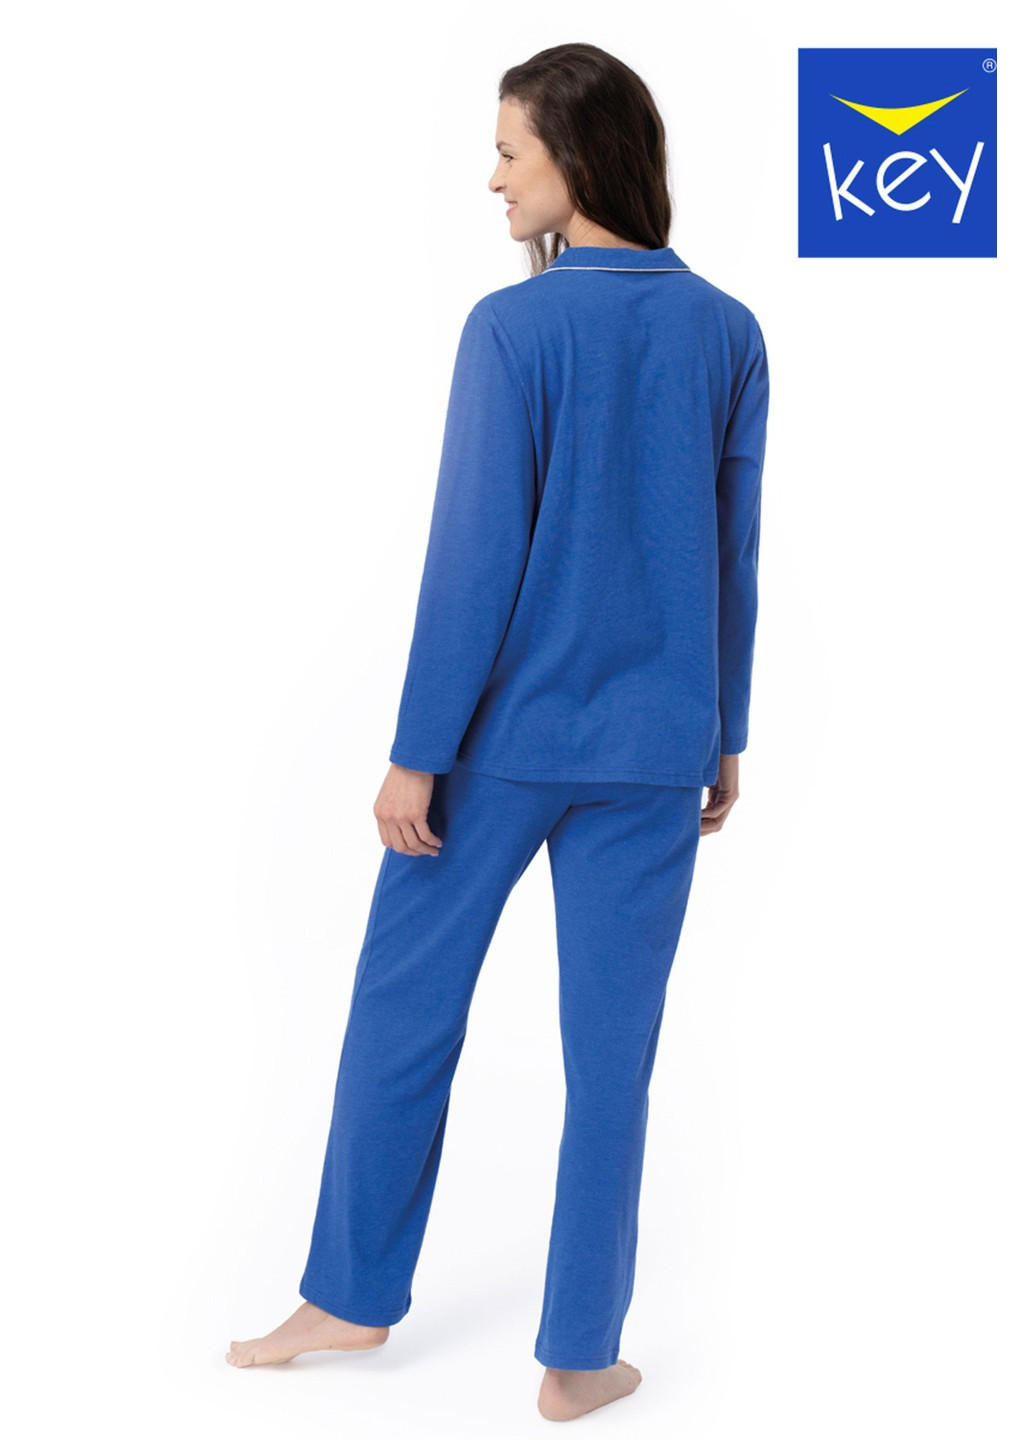 Синя піжама жіноча рубашка + брюки Key